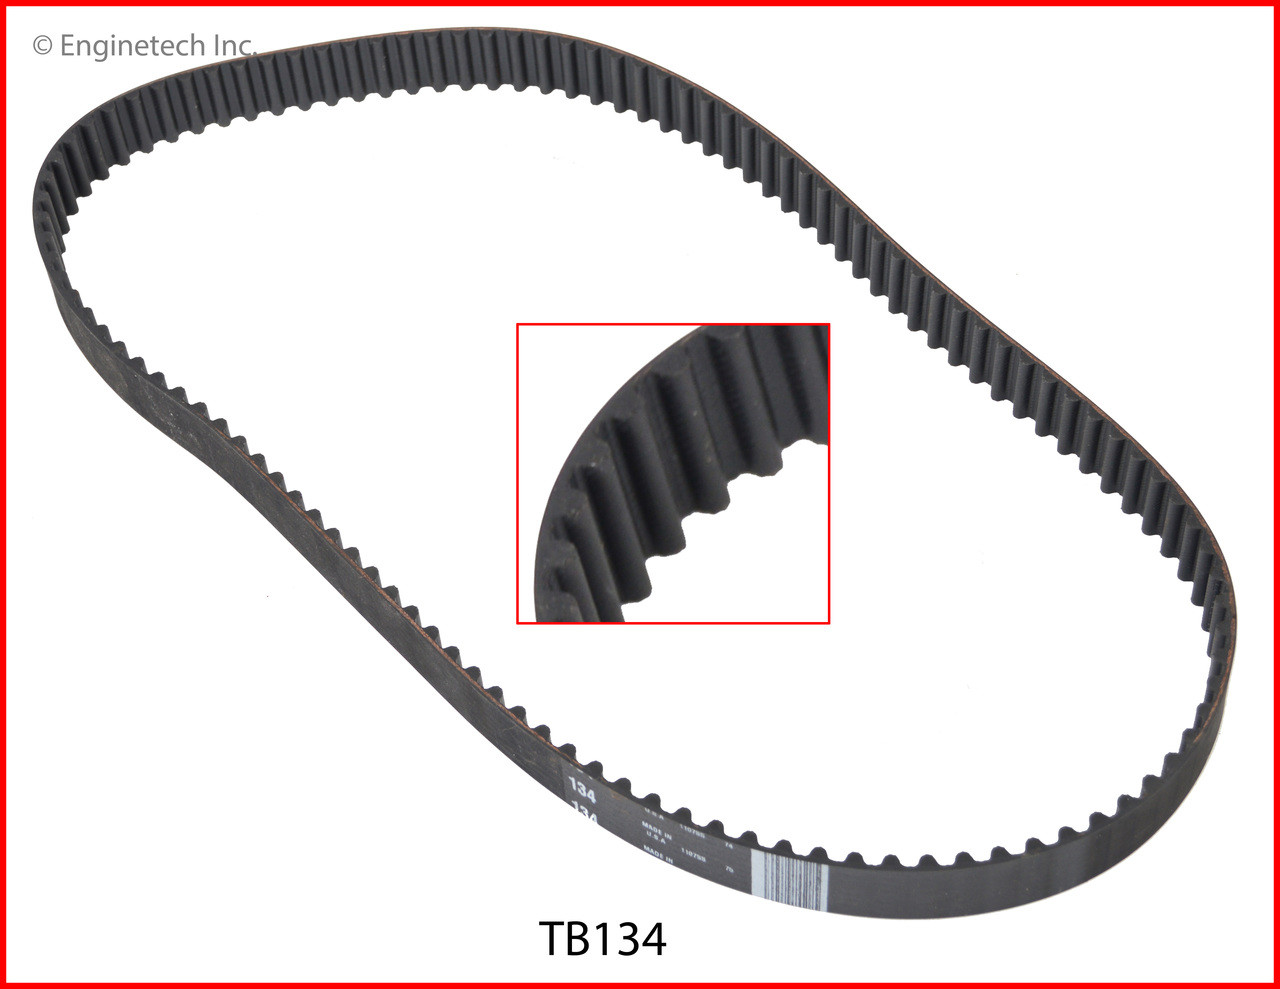 Timing Belt - 1990 Mazda B2200 2.2L (TB134.B19)